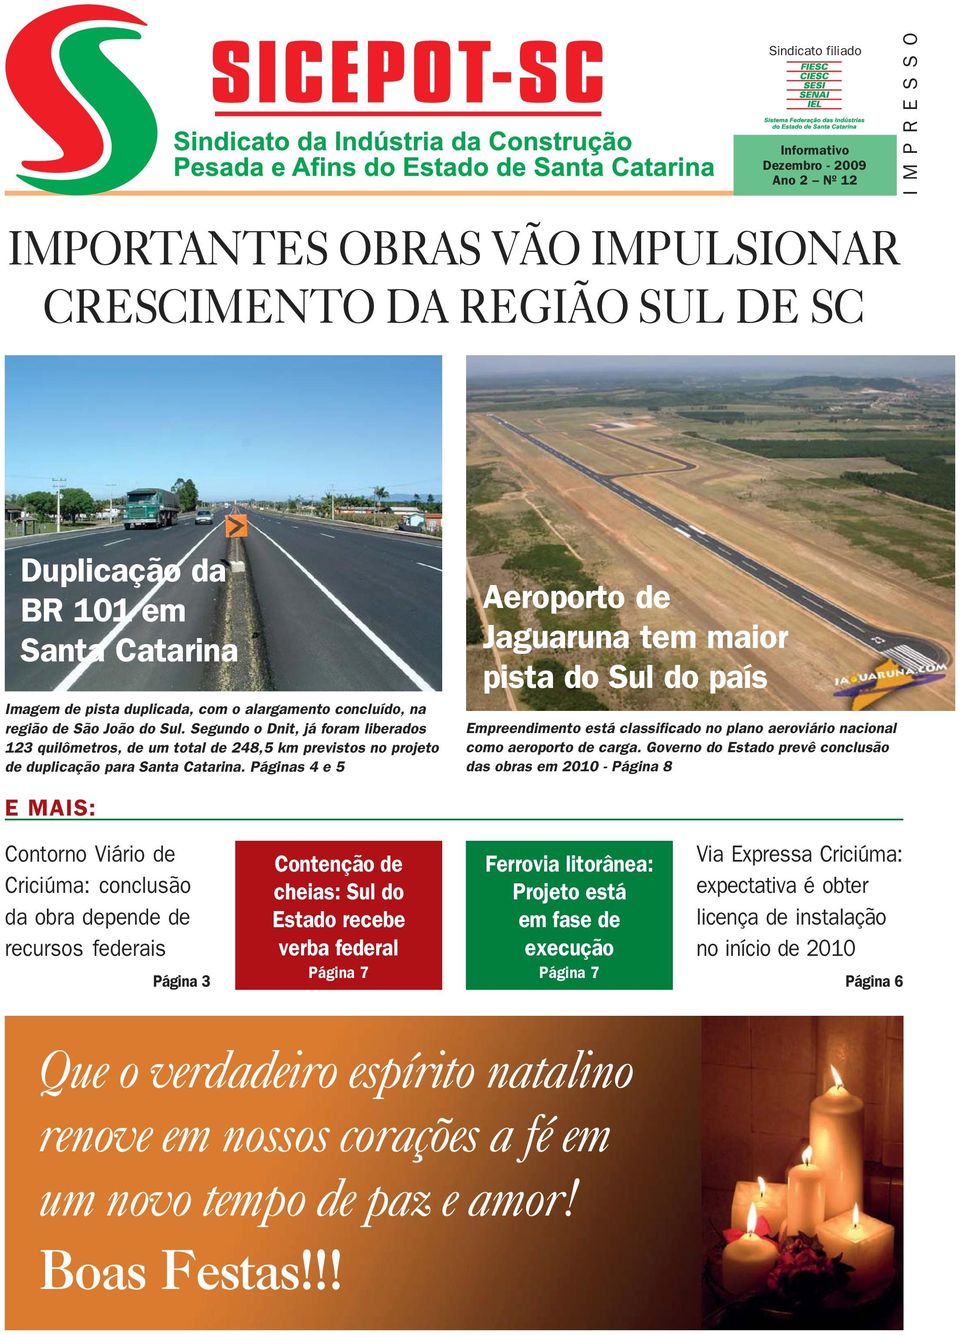 Segundo o Dnit, já foram liberados 123 quilômetros, de um total de 248,5 km previstos no projeto de duplicação para Santa Catarina.